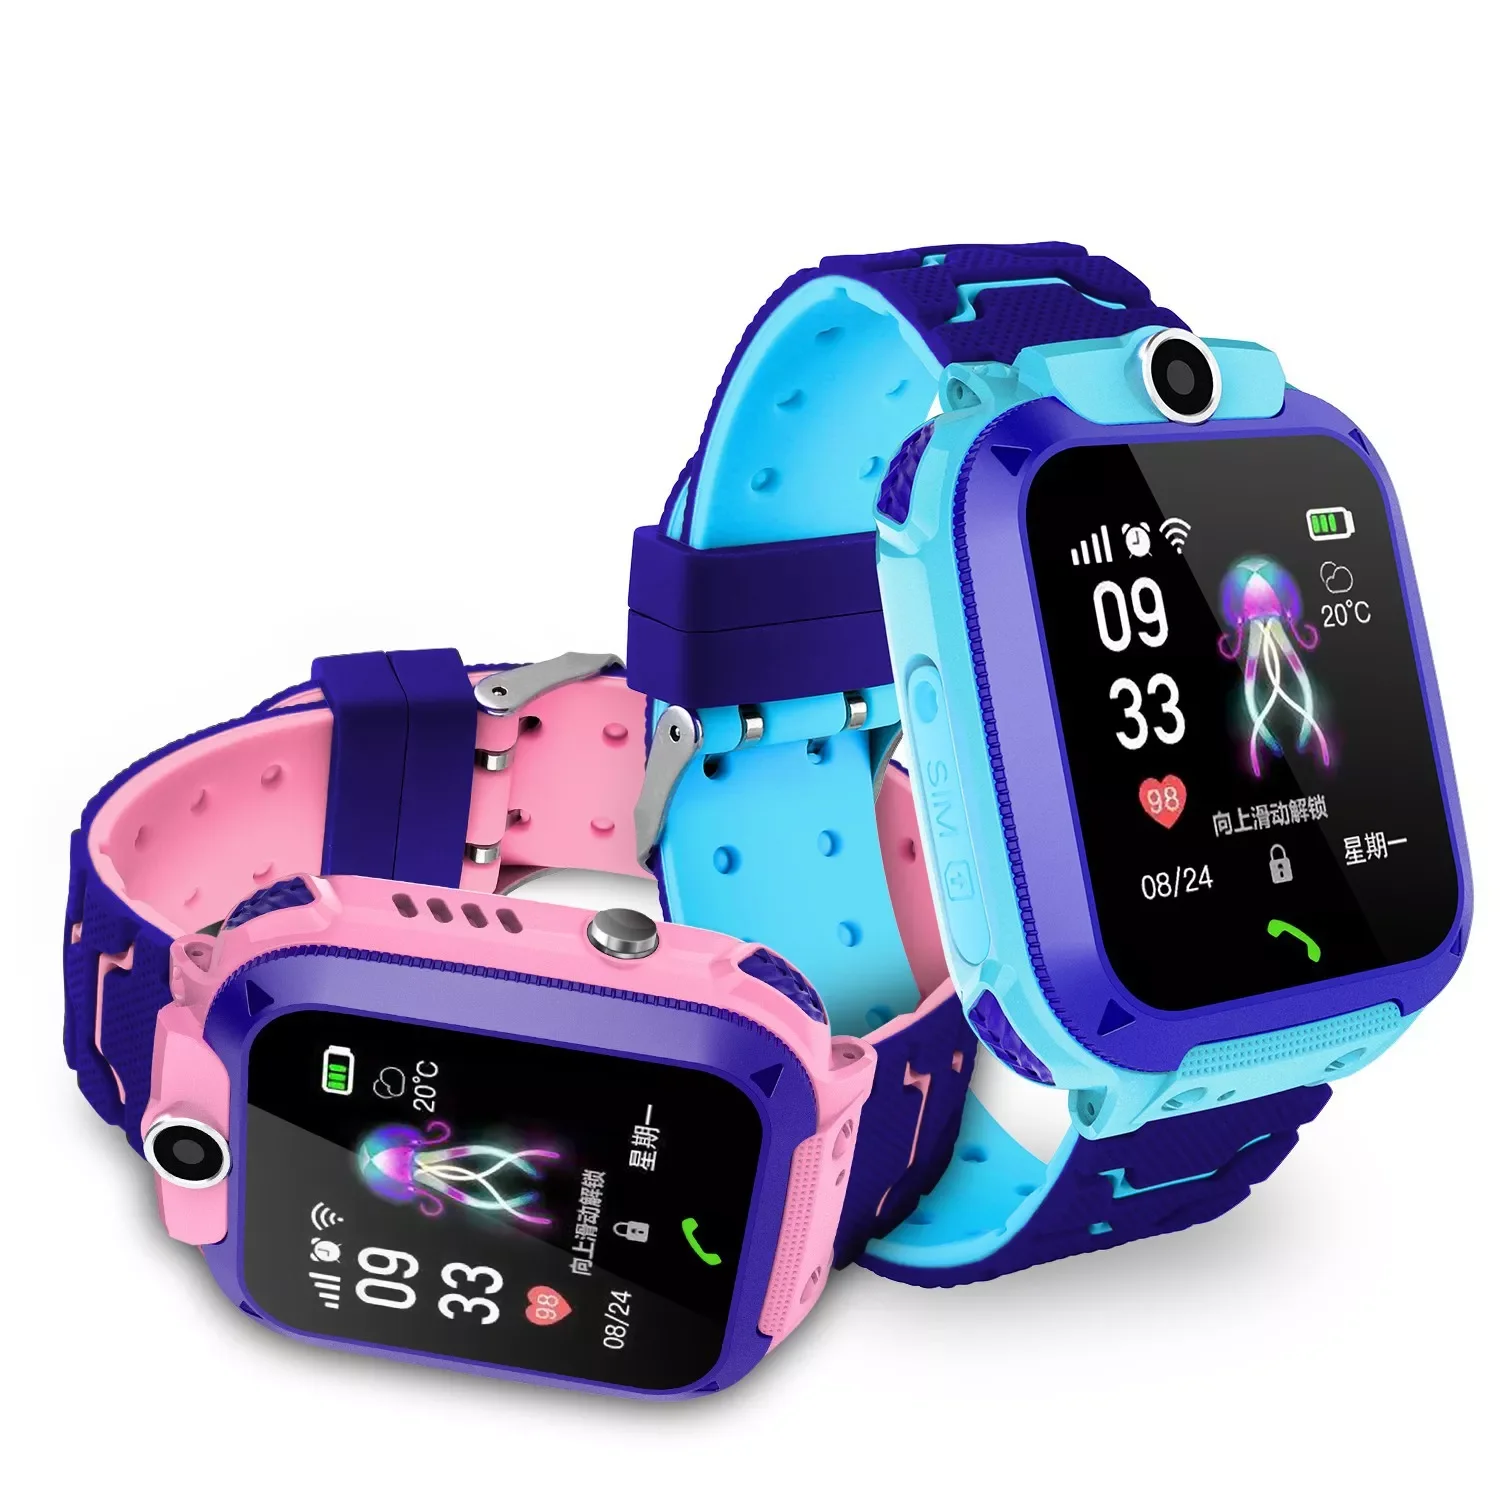 

Детские Смарт-часы Q12 английская версия SOS безопасность Мобильные смарт-часы использовать Sim-карту фото водонепроницаемый подарок для мальч...